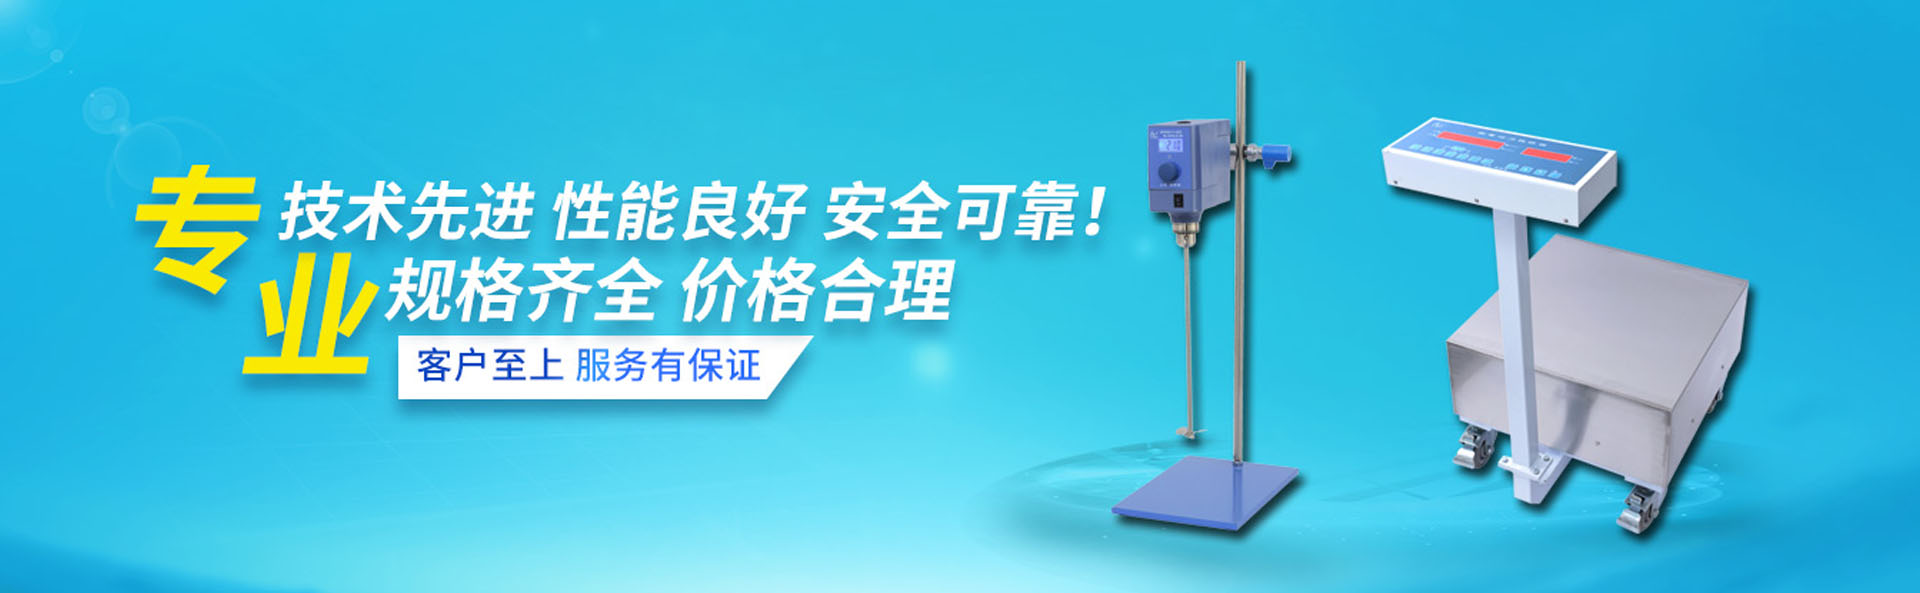 上海梅颖浦仪器仪表制造有限公司|上海梅颖浦|梅颖浦搅拌器|上海梅颖浦仪器专卖